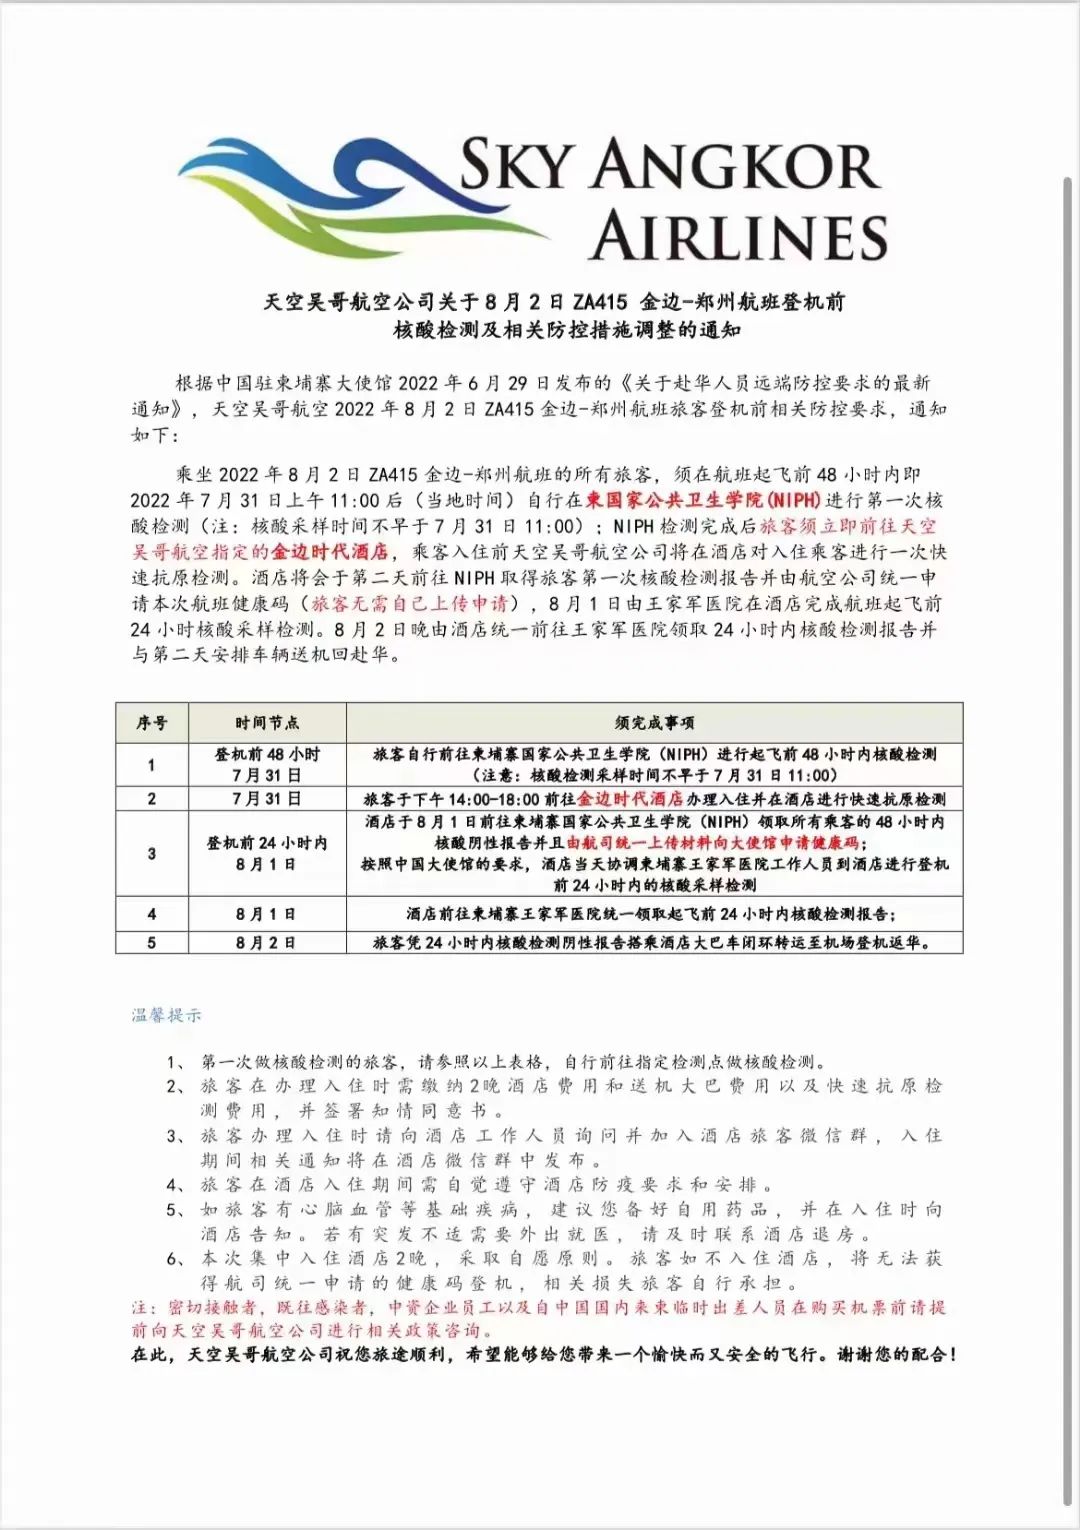 7.30 8.1 8.2 东航、深航、天空吴哥航班回国隔离检测安排